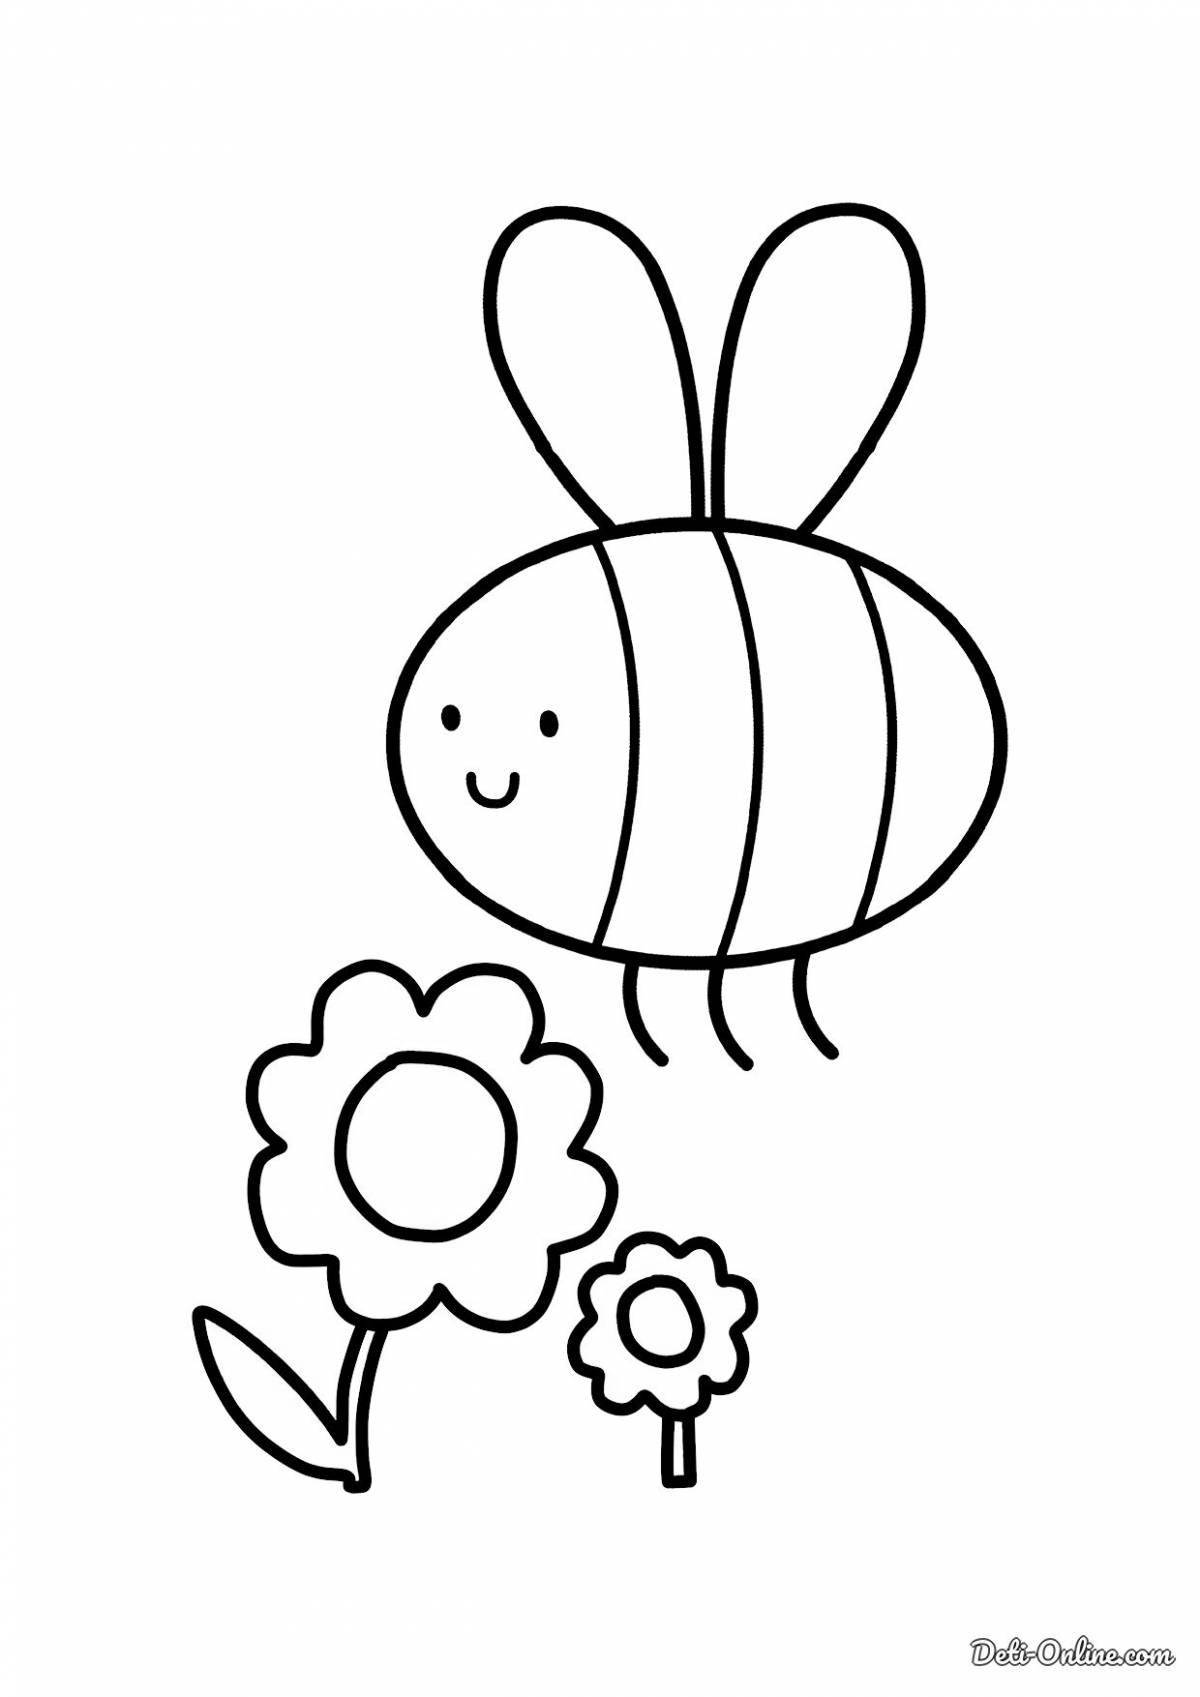 Странная раскраска пчелы для детей 3-4 лет